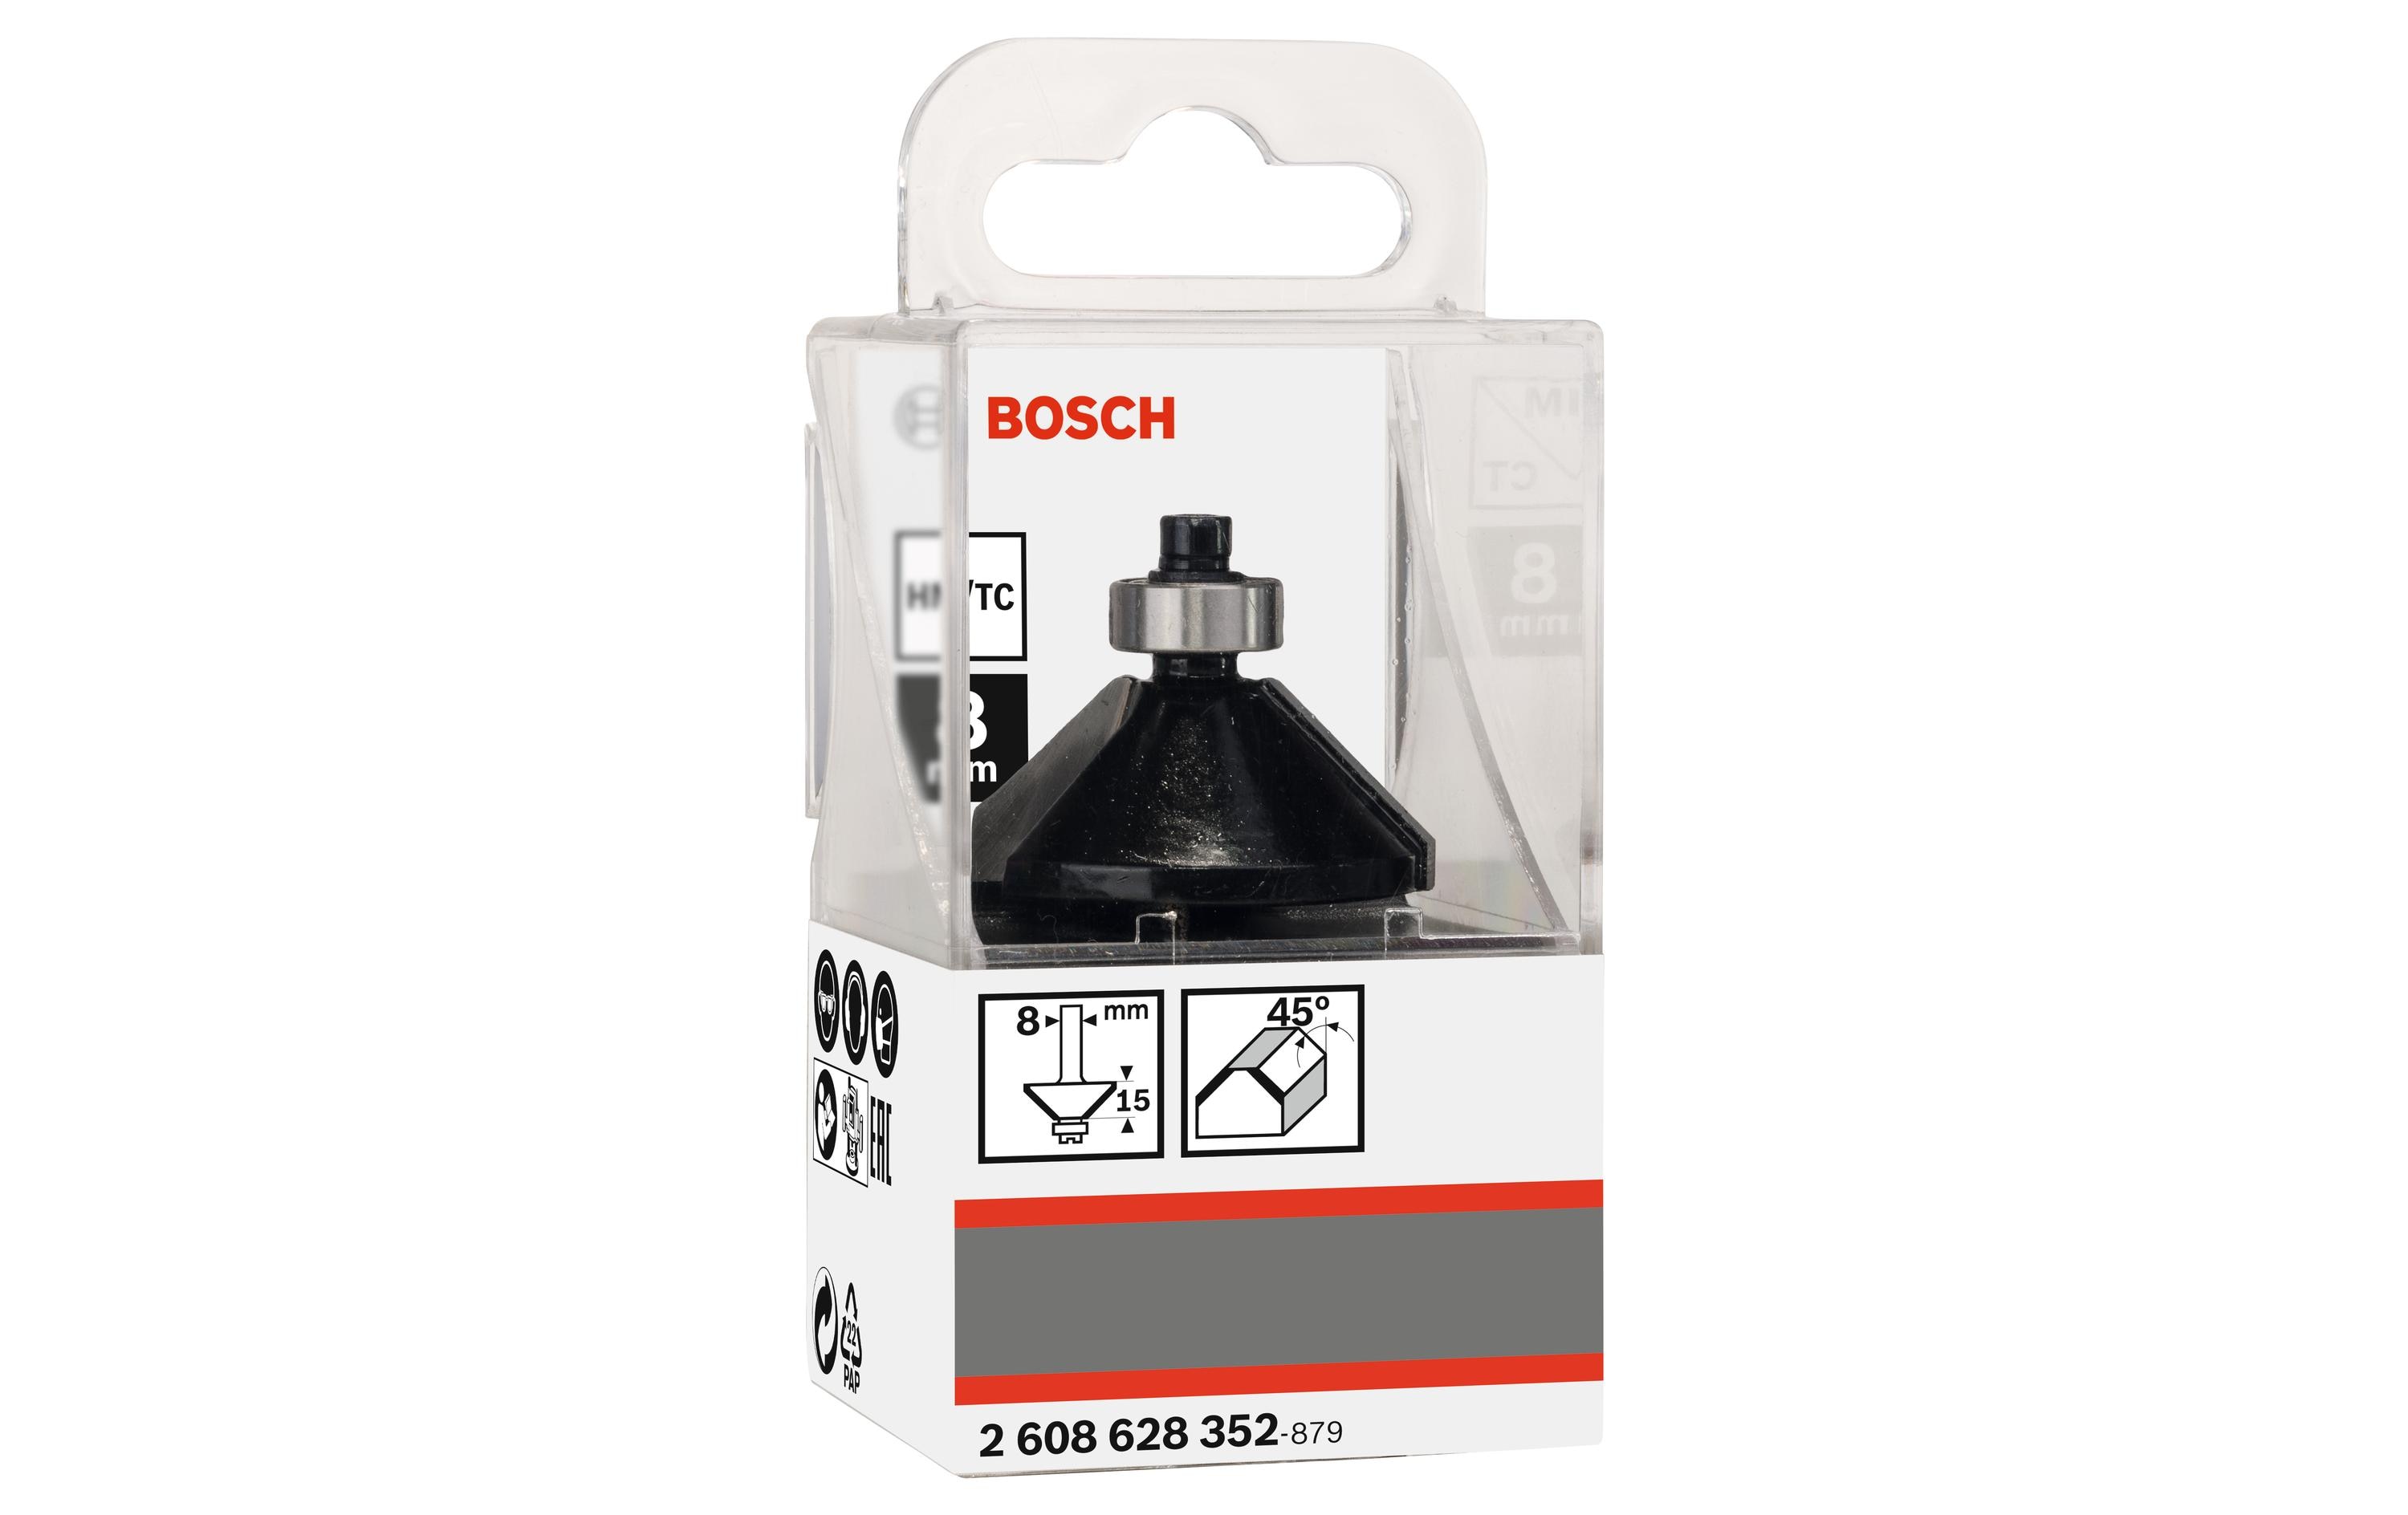 Bosch Professional Fasenfräser B: 11 mm, L: 15 mm, G: 56 mm, 45°